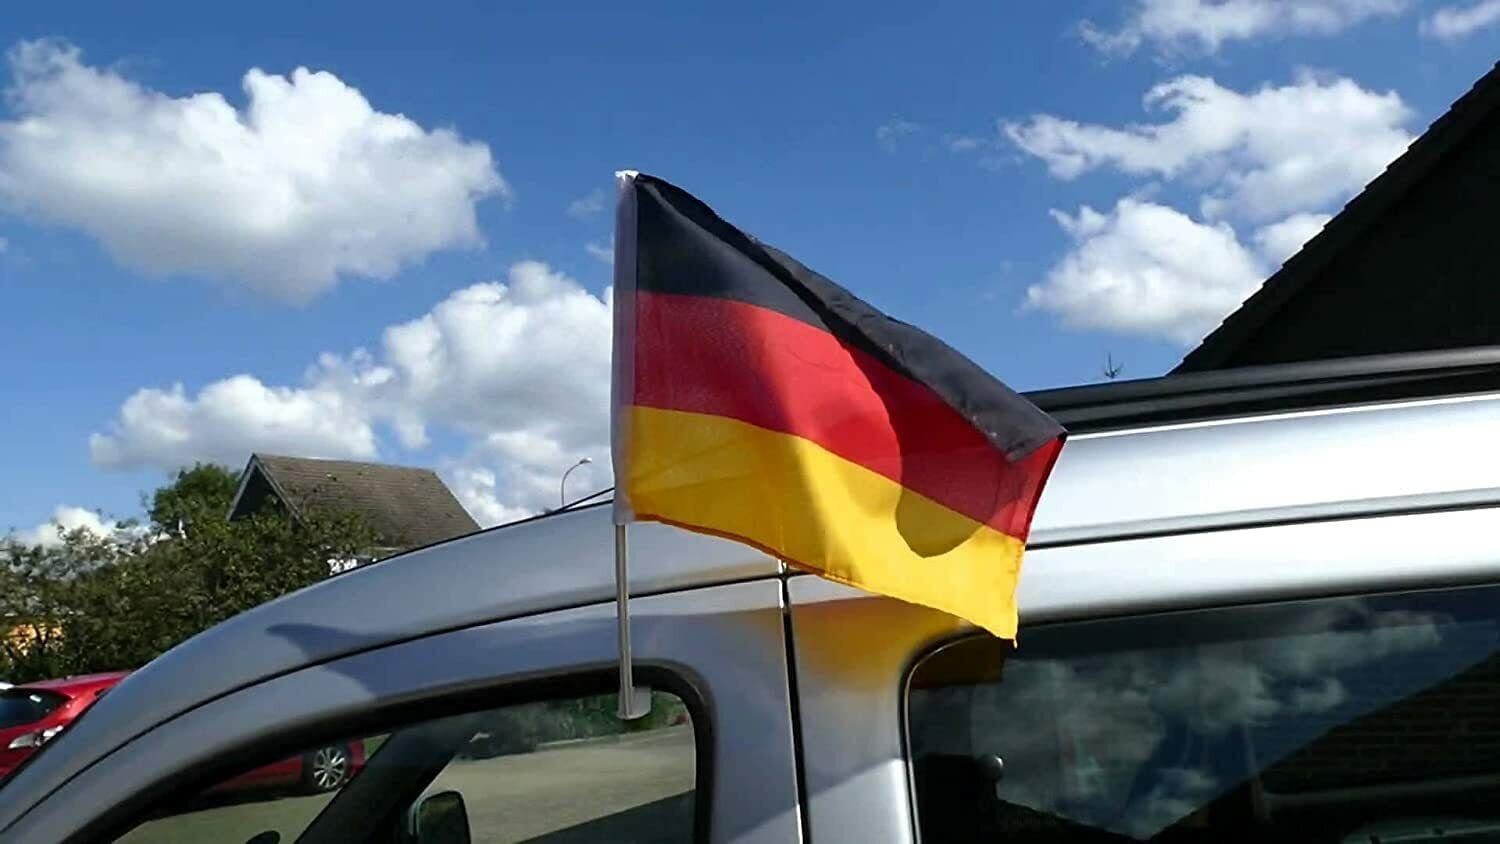 MFH Flagge Deutschland, Holzstiel, 30x45 cm